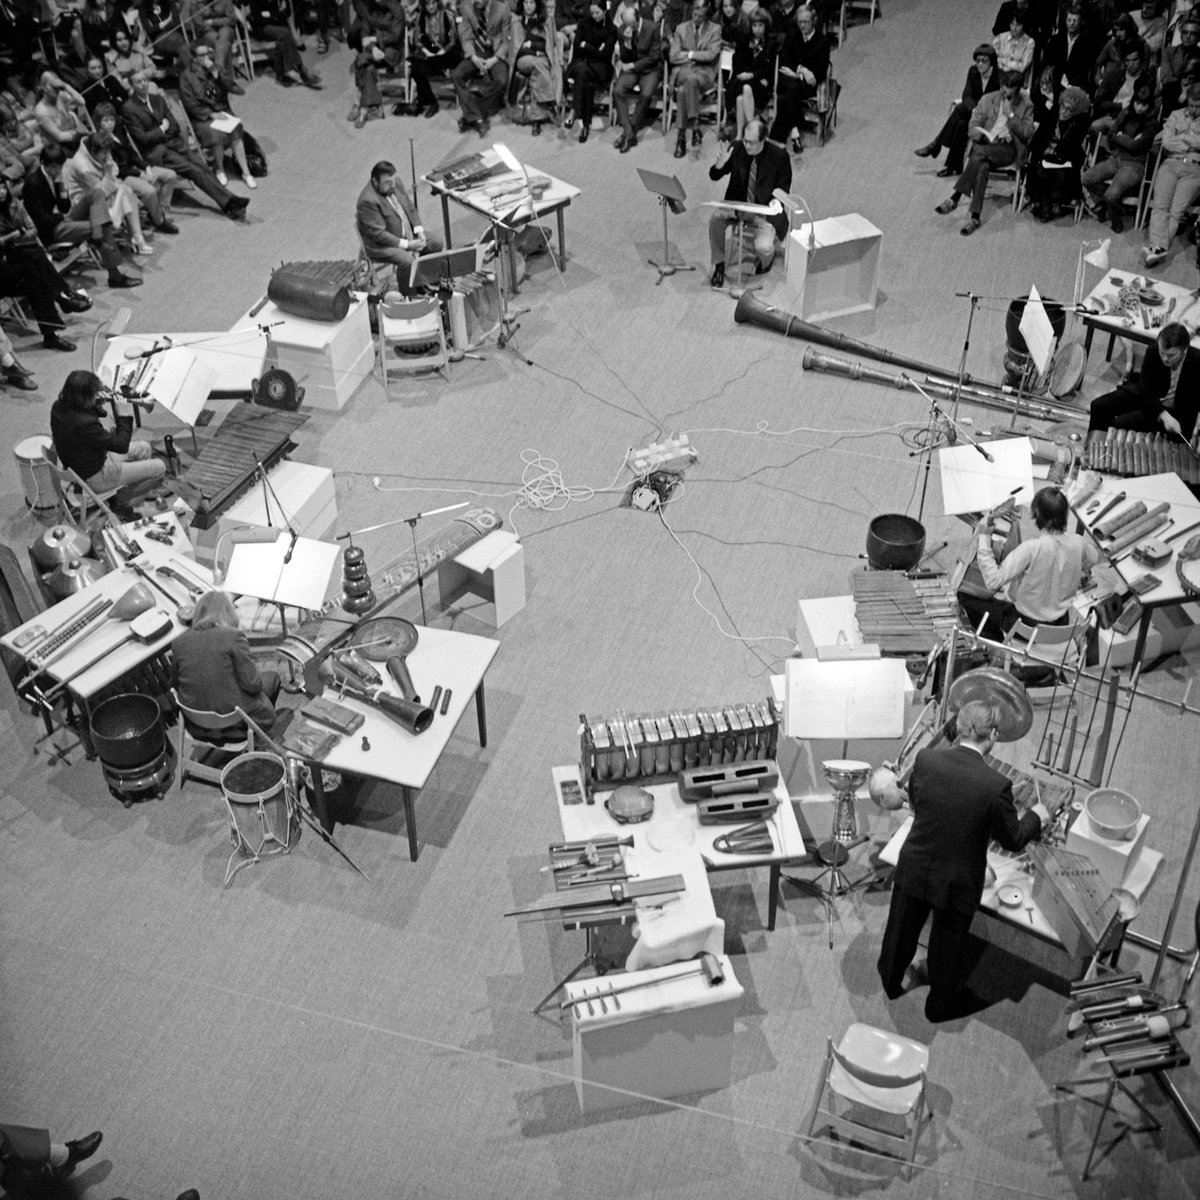 Schwarz-Weiß-Fotografie einer Gruppe Musiker, die Instrumente spielen aus der Vogelperspektive.